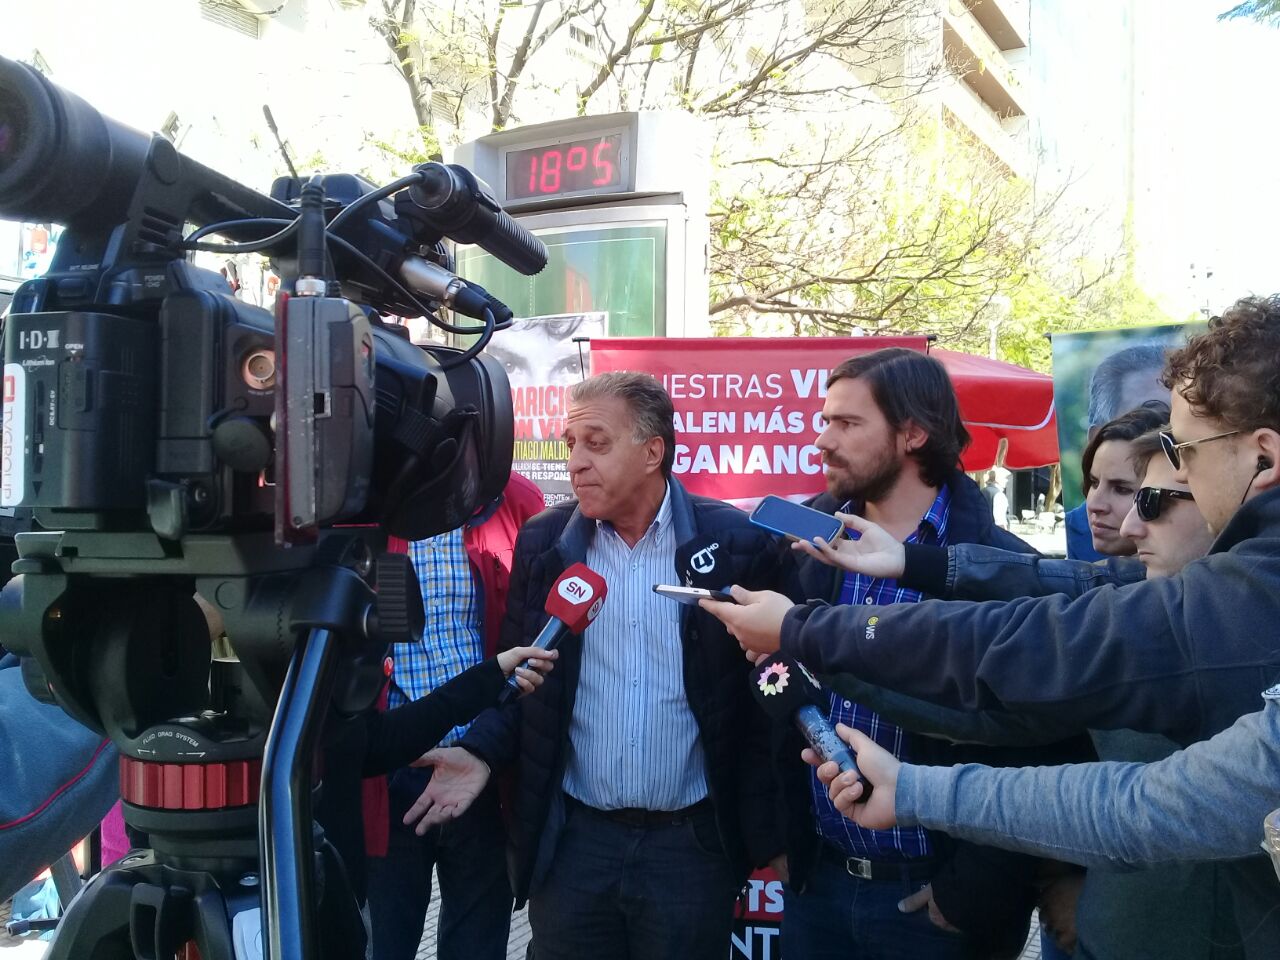 Pitrola desde Bahía Blanca: “El sindicalismo de izquierda sale la calle contra la reforma laboral”